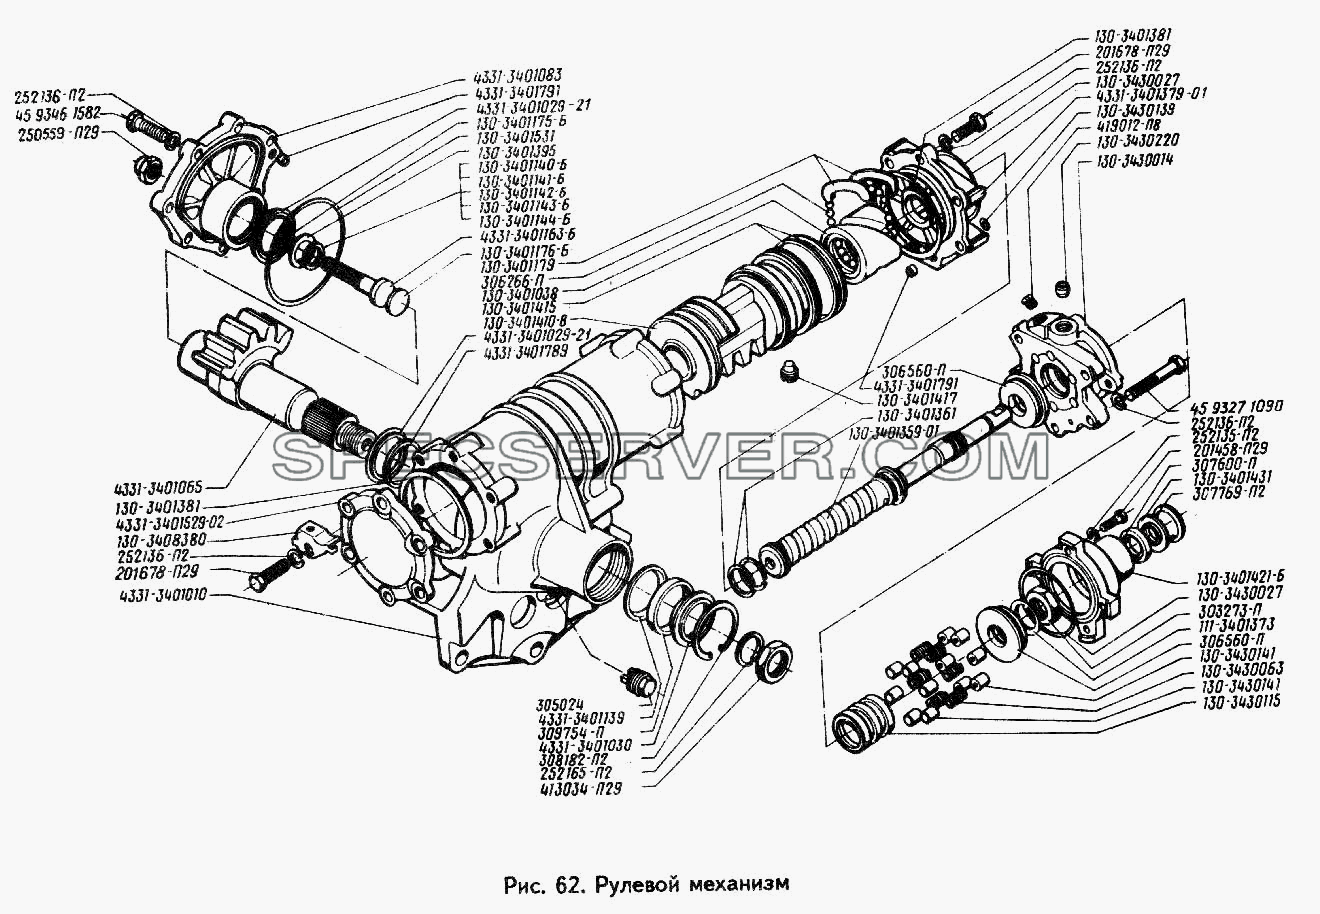 Рулевой механизм для ЗИЛ 442160 (список запасных частей)